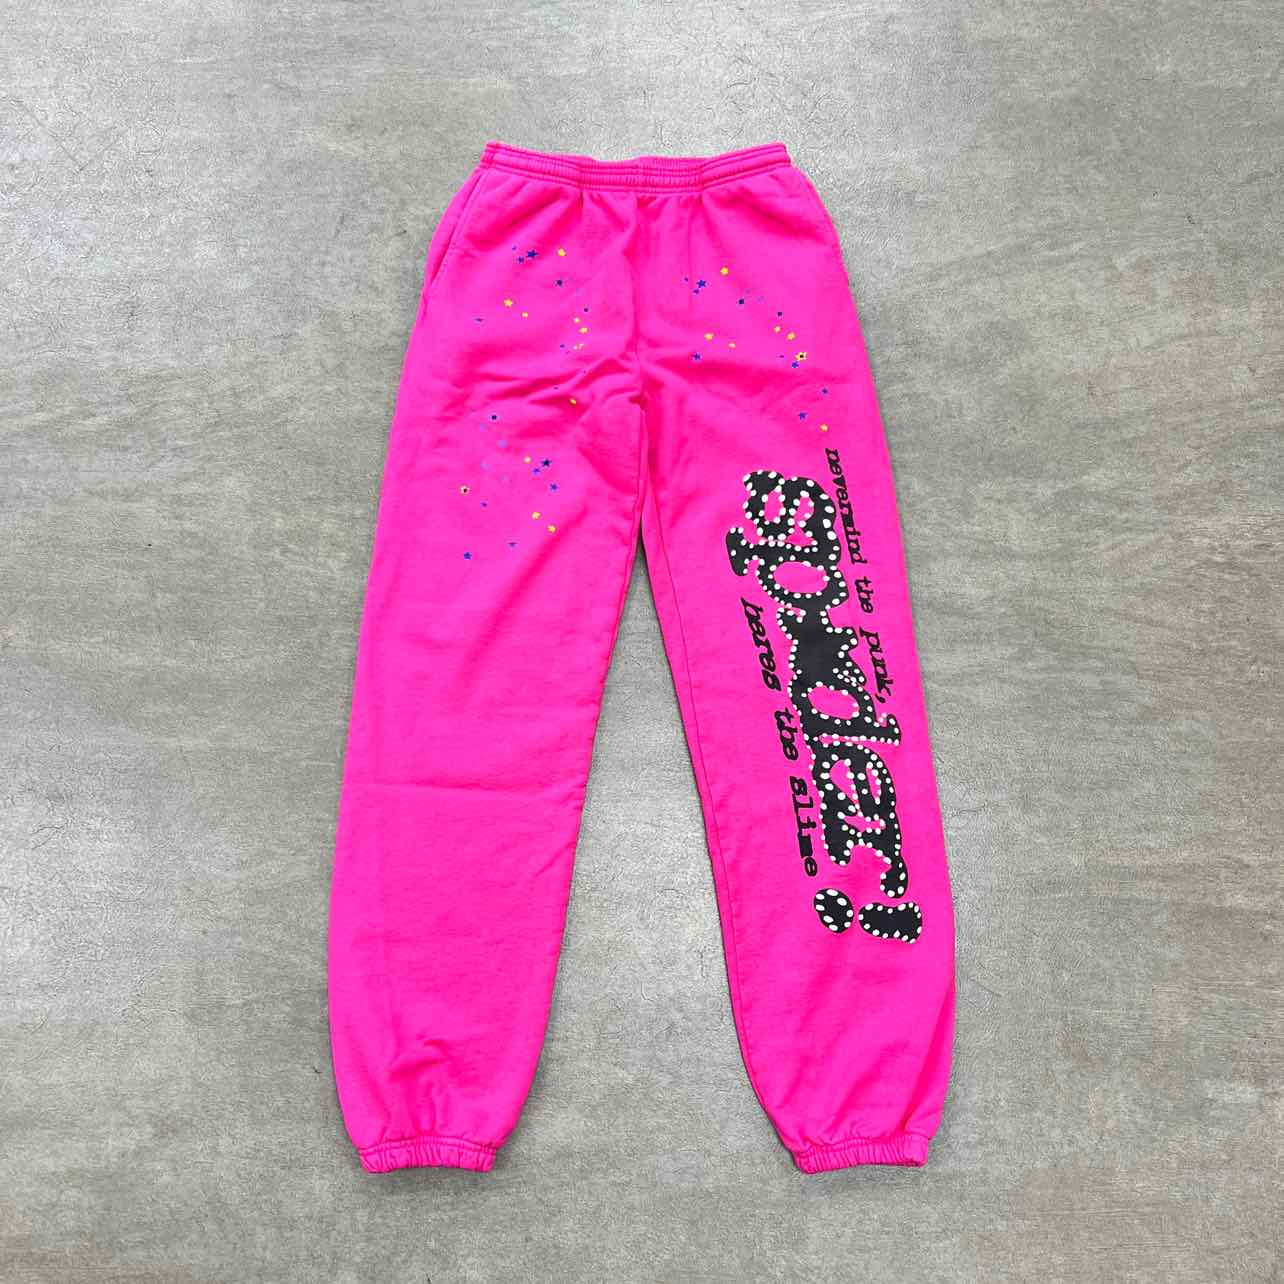 Sp5der Sweatpants &quot;P*NK&quot; Pink New Size M